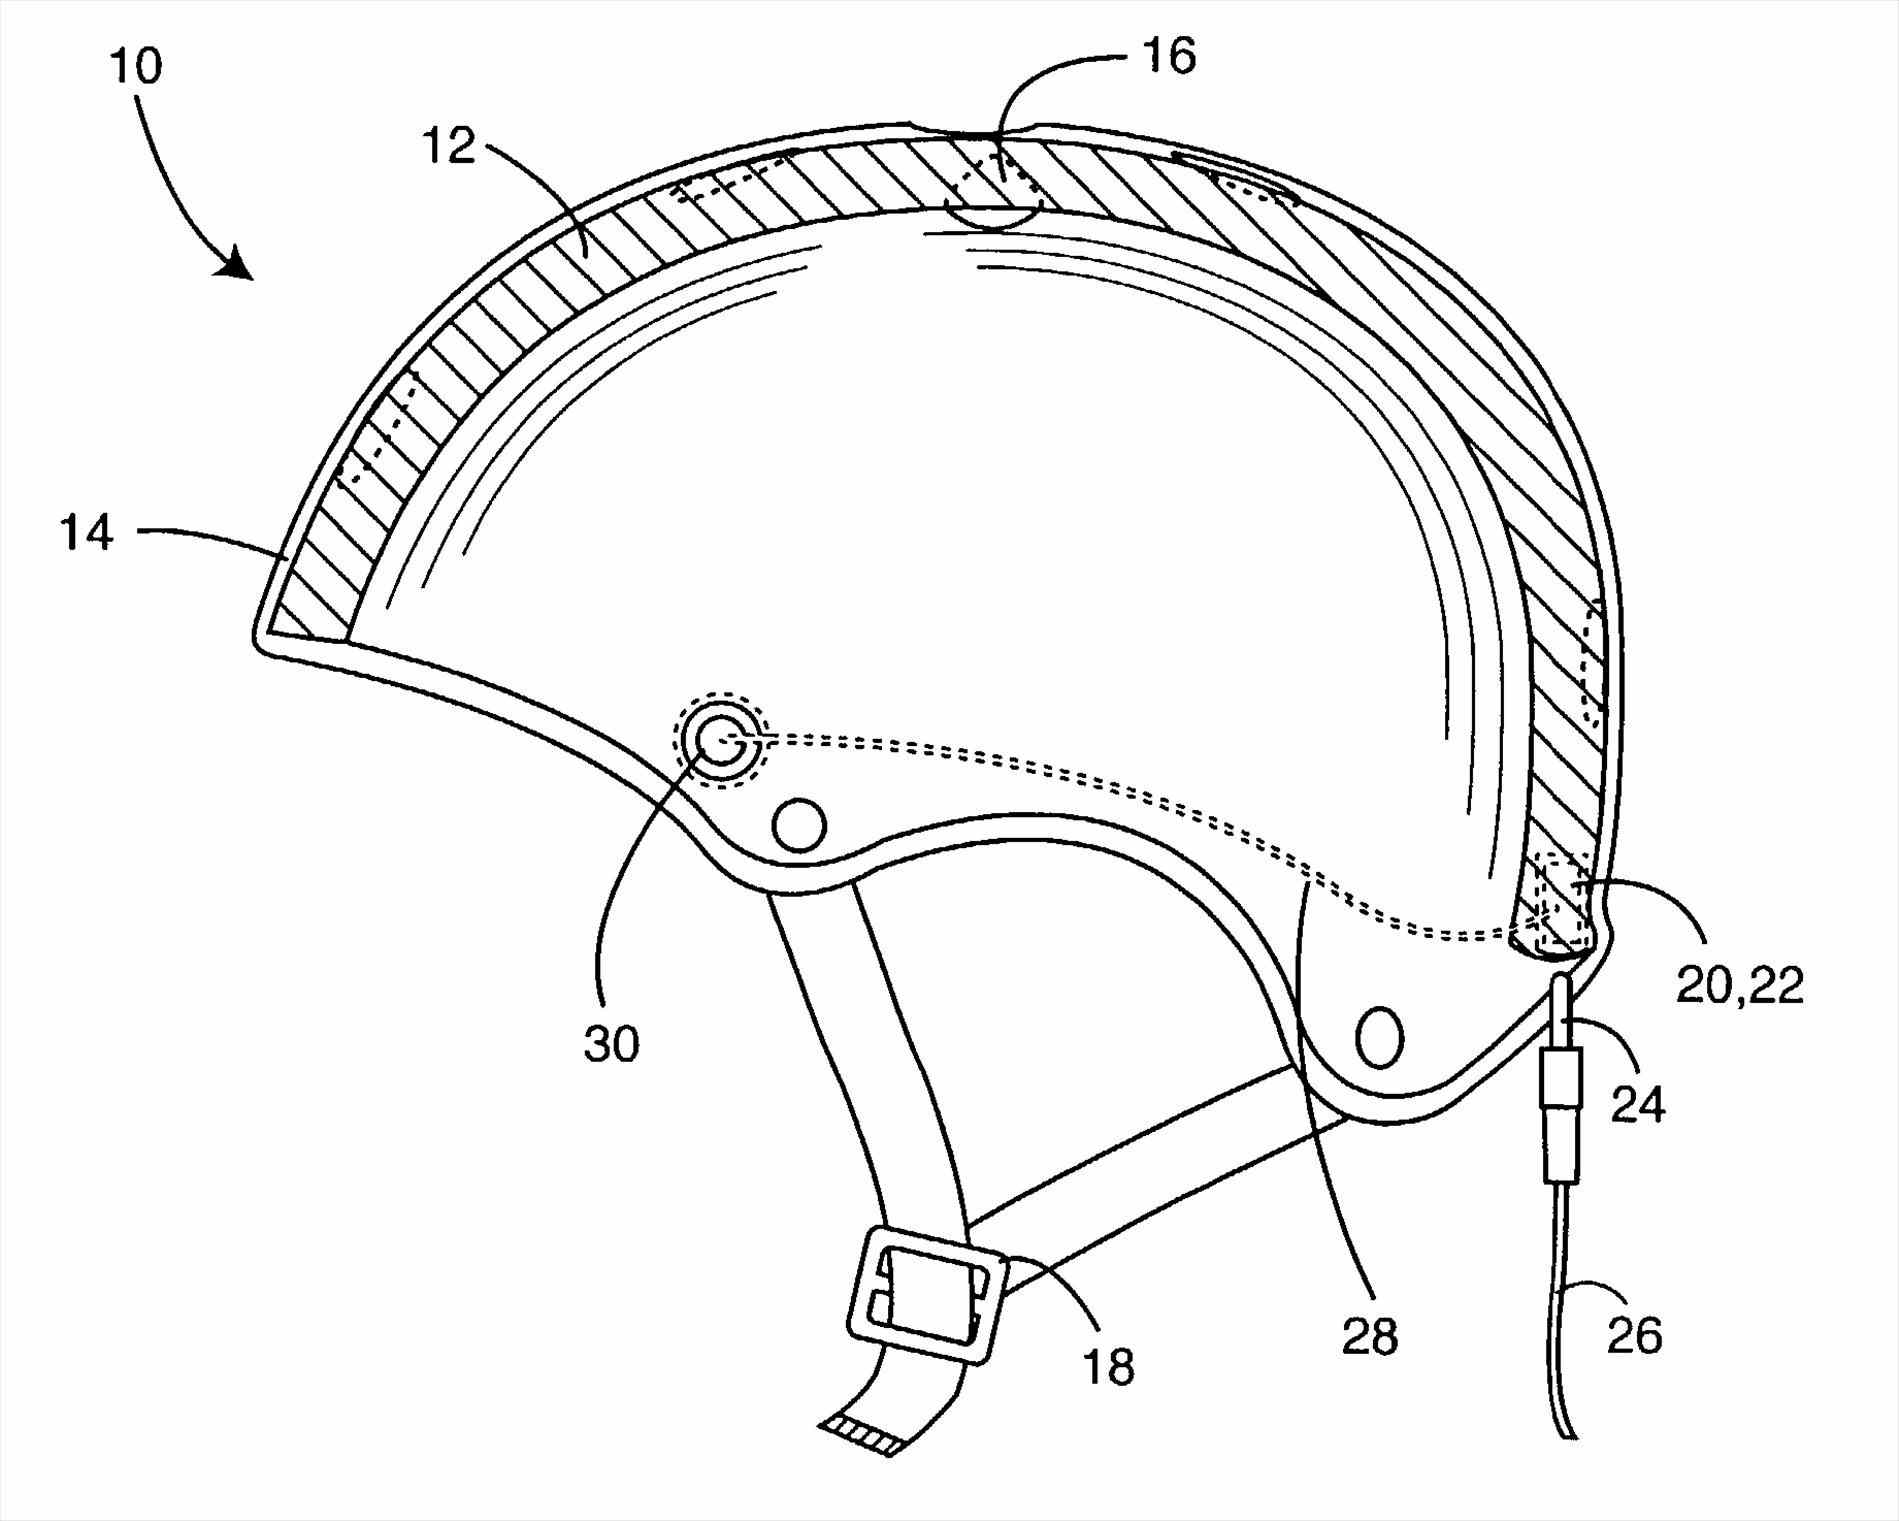 Bicycle Helmet Drawing at GetDrawings Free download